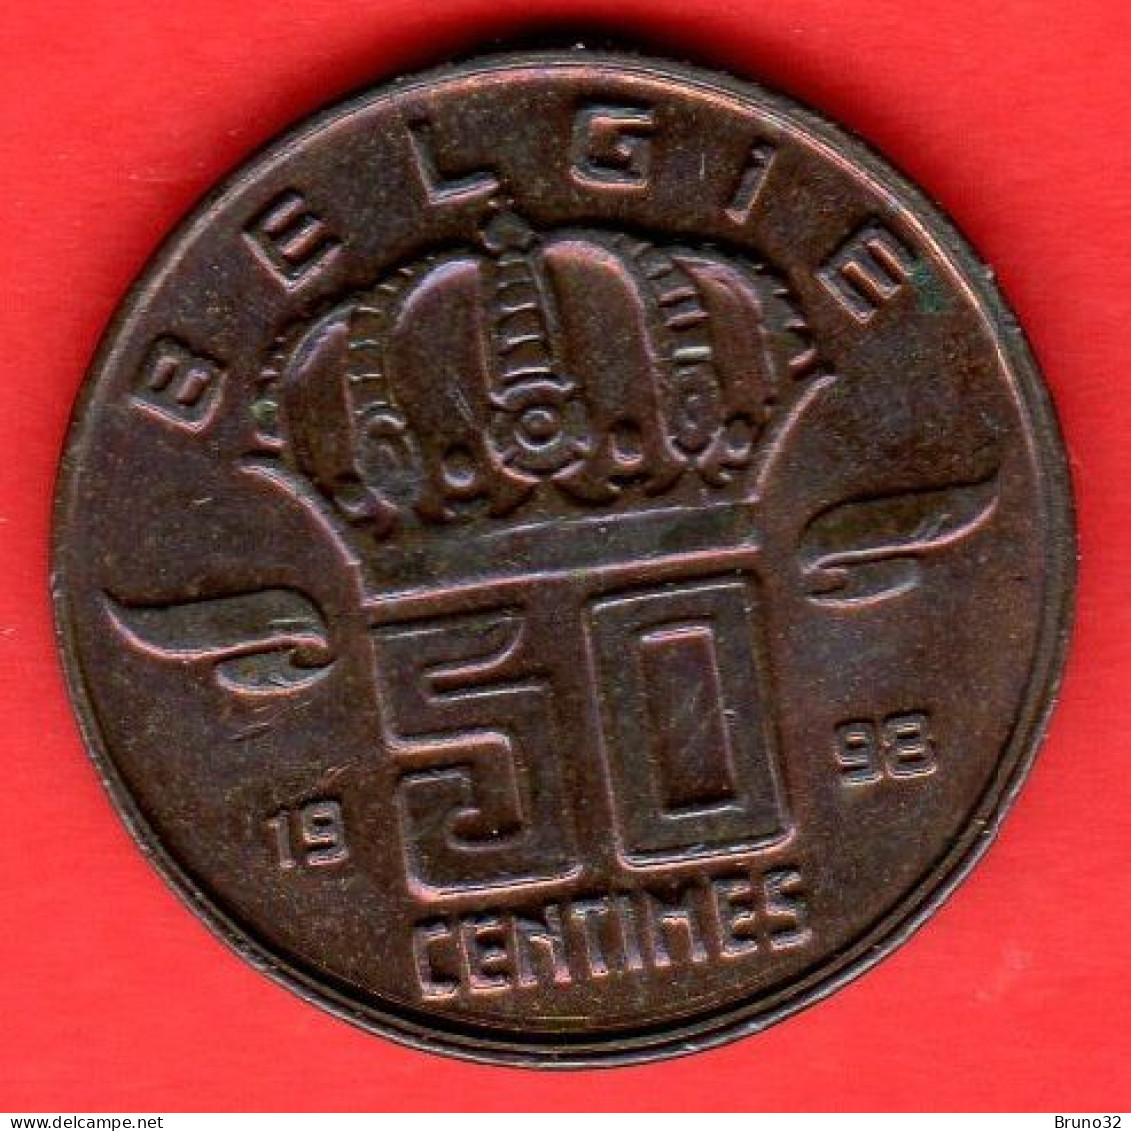 Belgio - Belgium - Belgique - Belgie - 1998 - 50 Centimes - QFDC/aUNC - Come Da Foto - 50 Cents